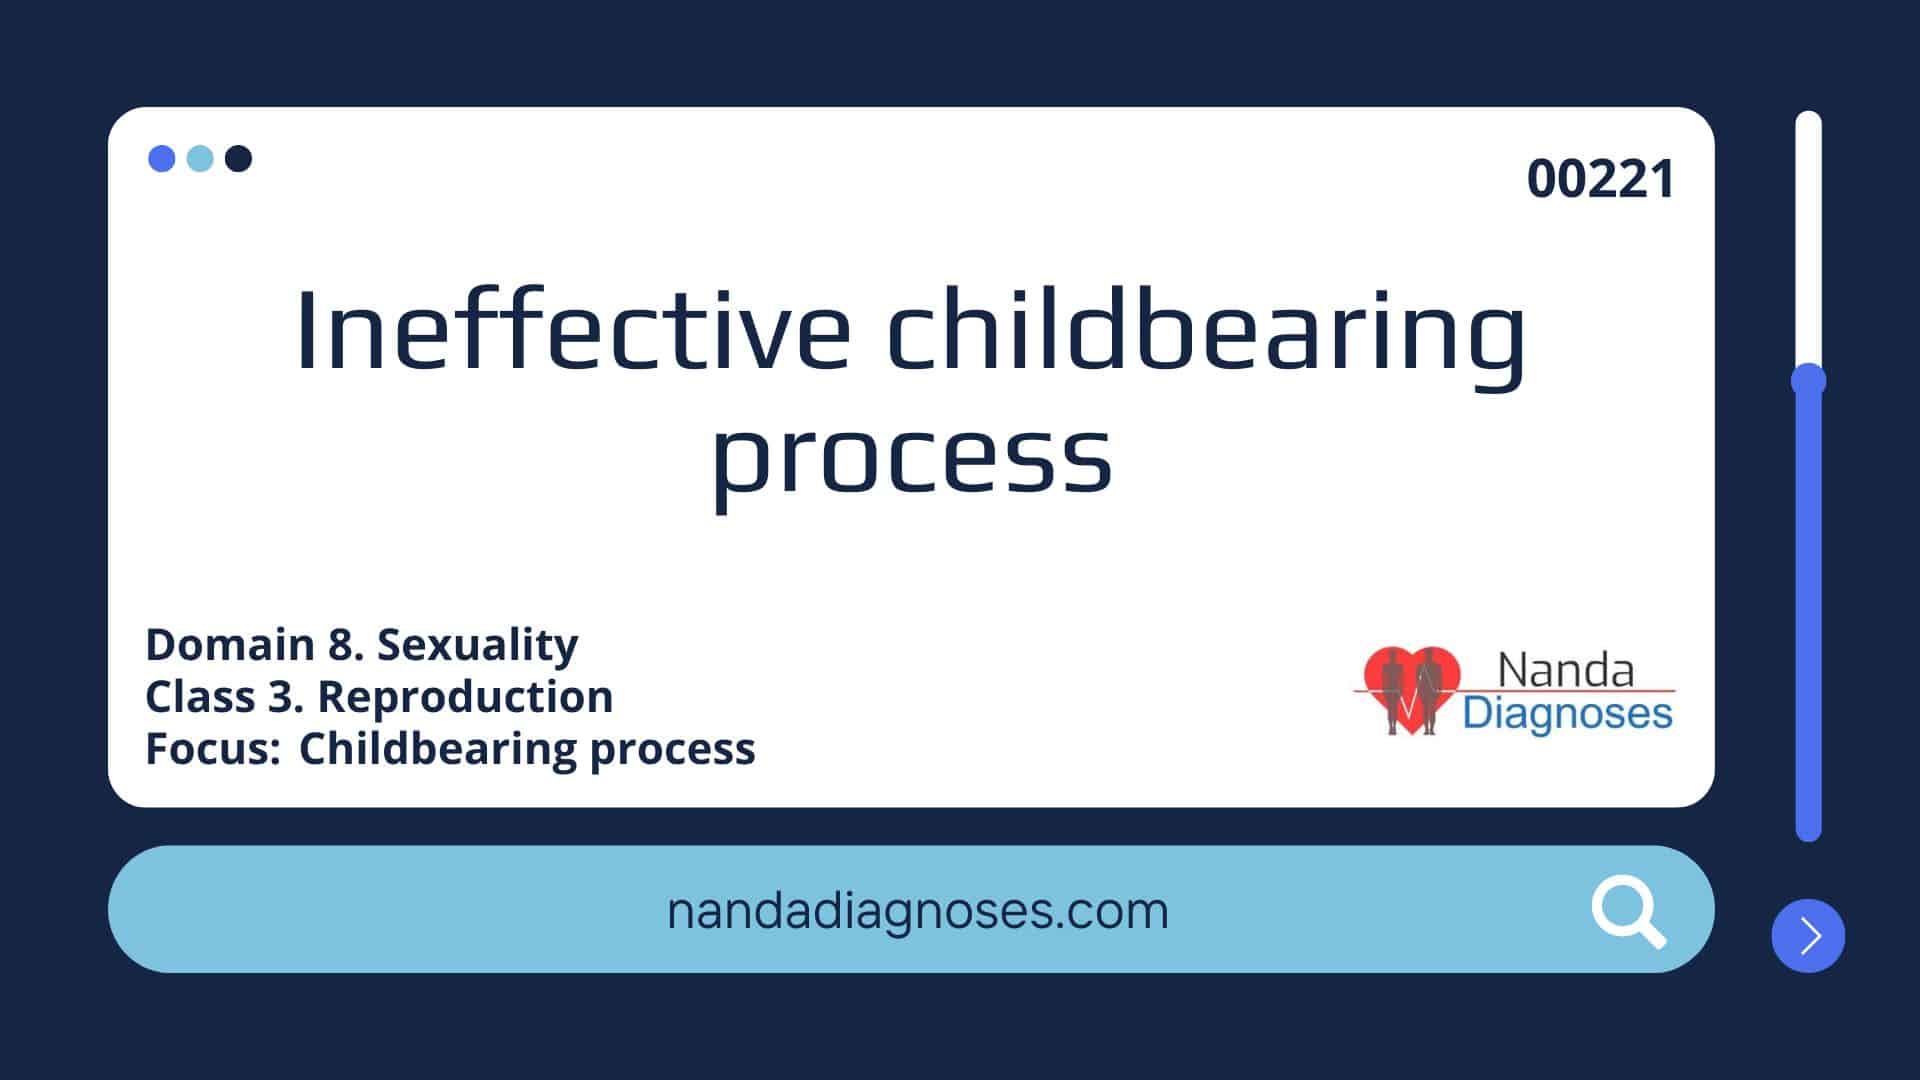 Ineffective childbearing process